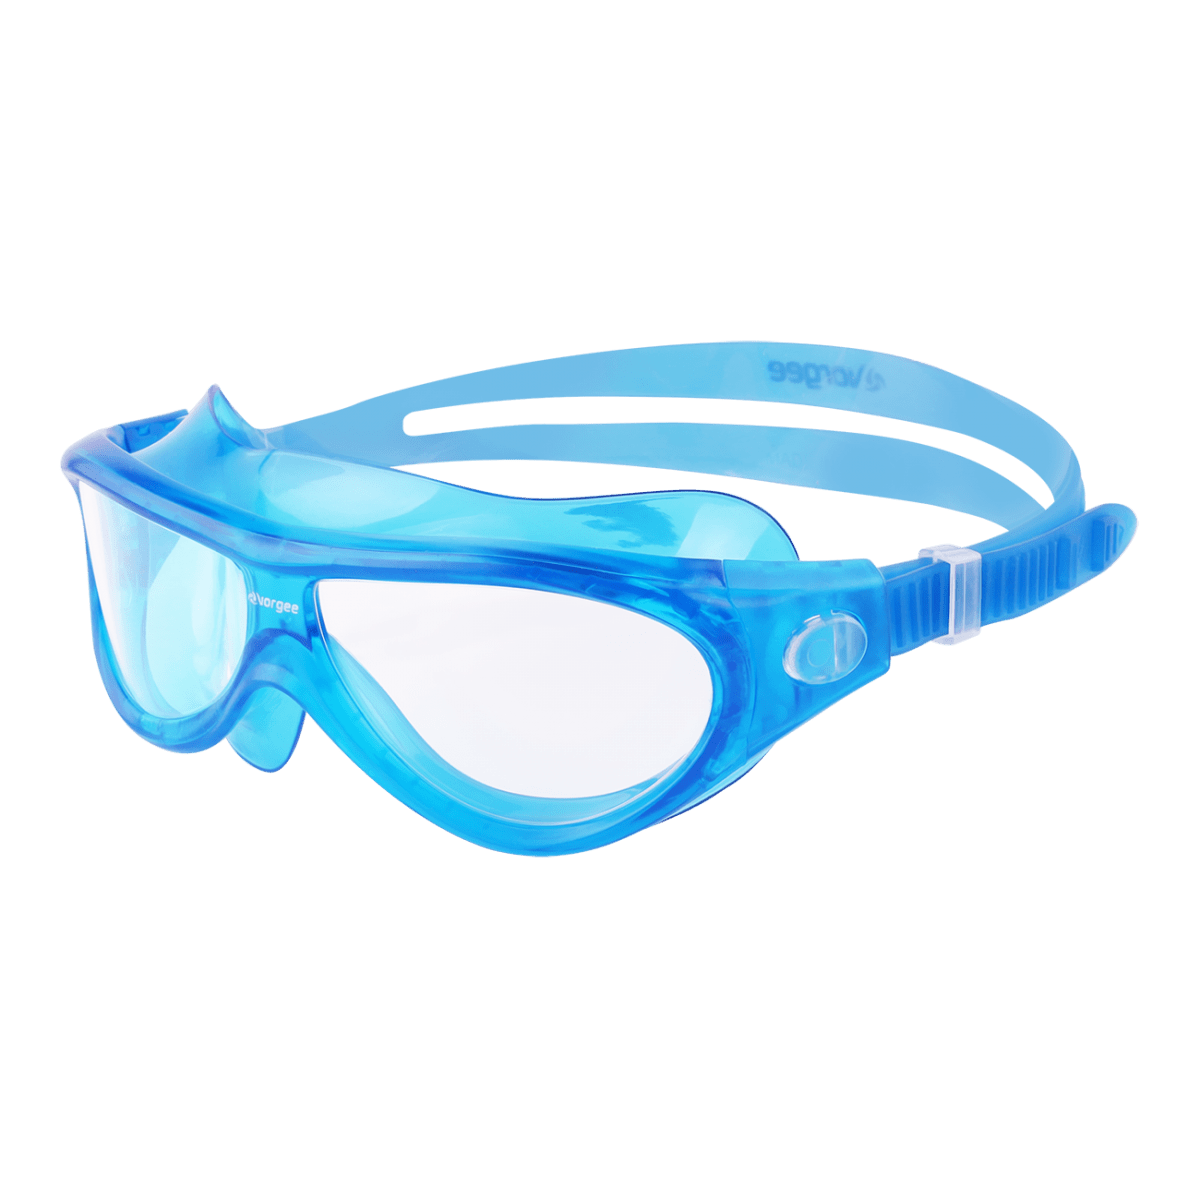 Vorgee Starfish Junior Swim Mask by Ocean Junction - Ocean Junction